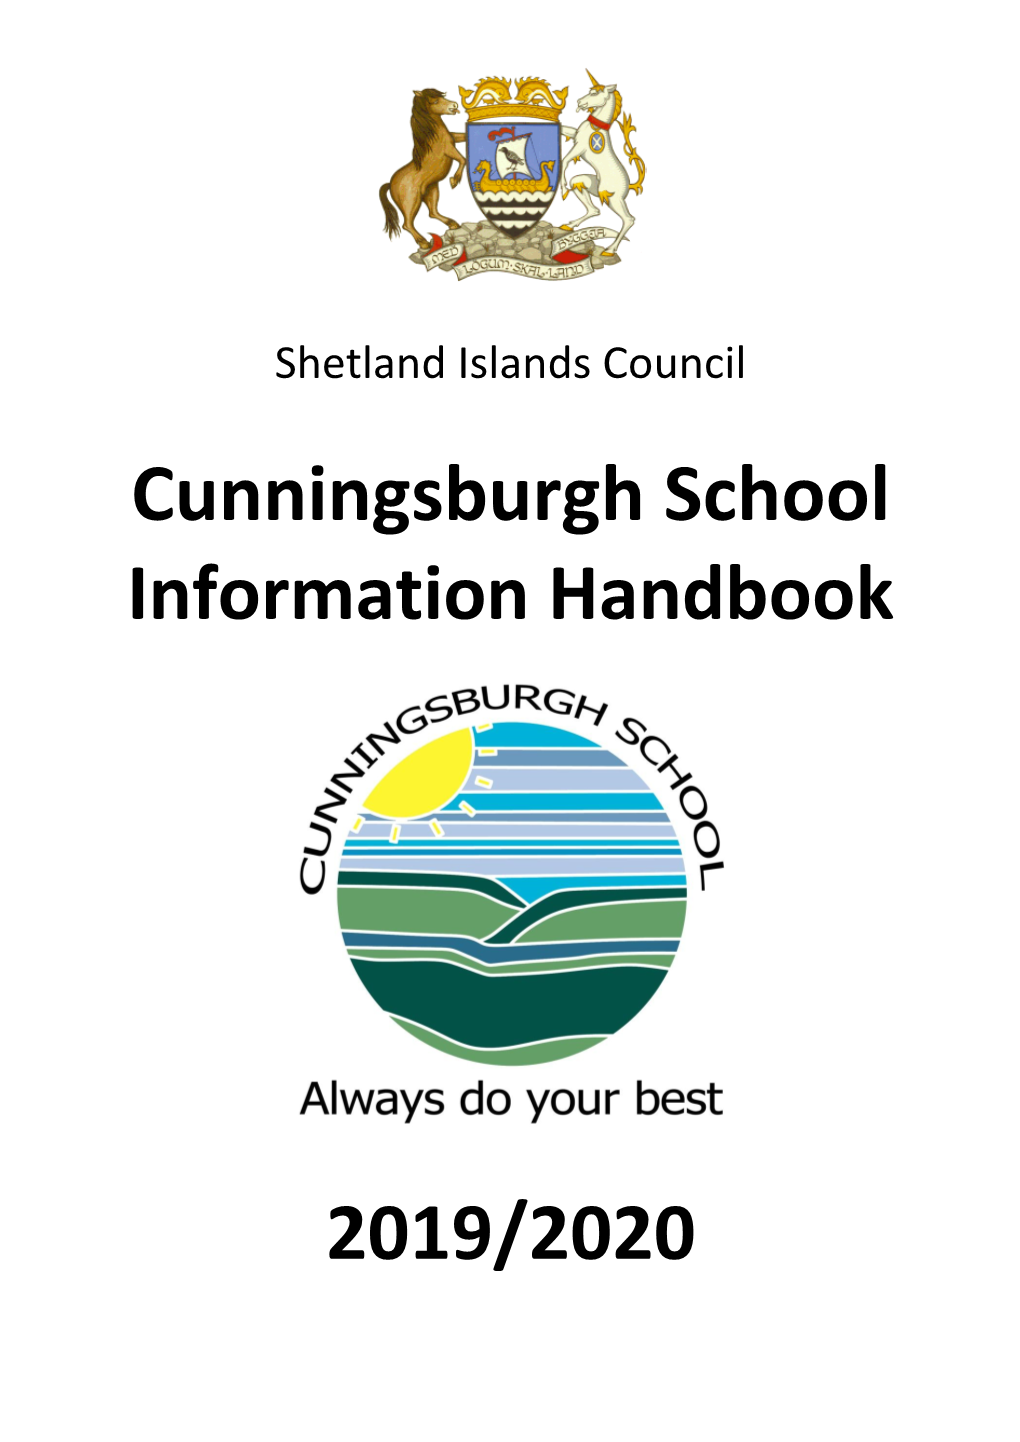 Cunningsburgh School Information Handbook